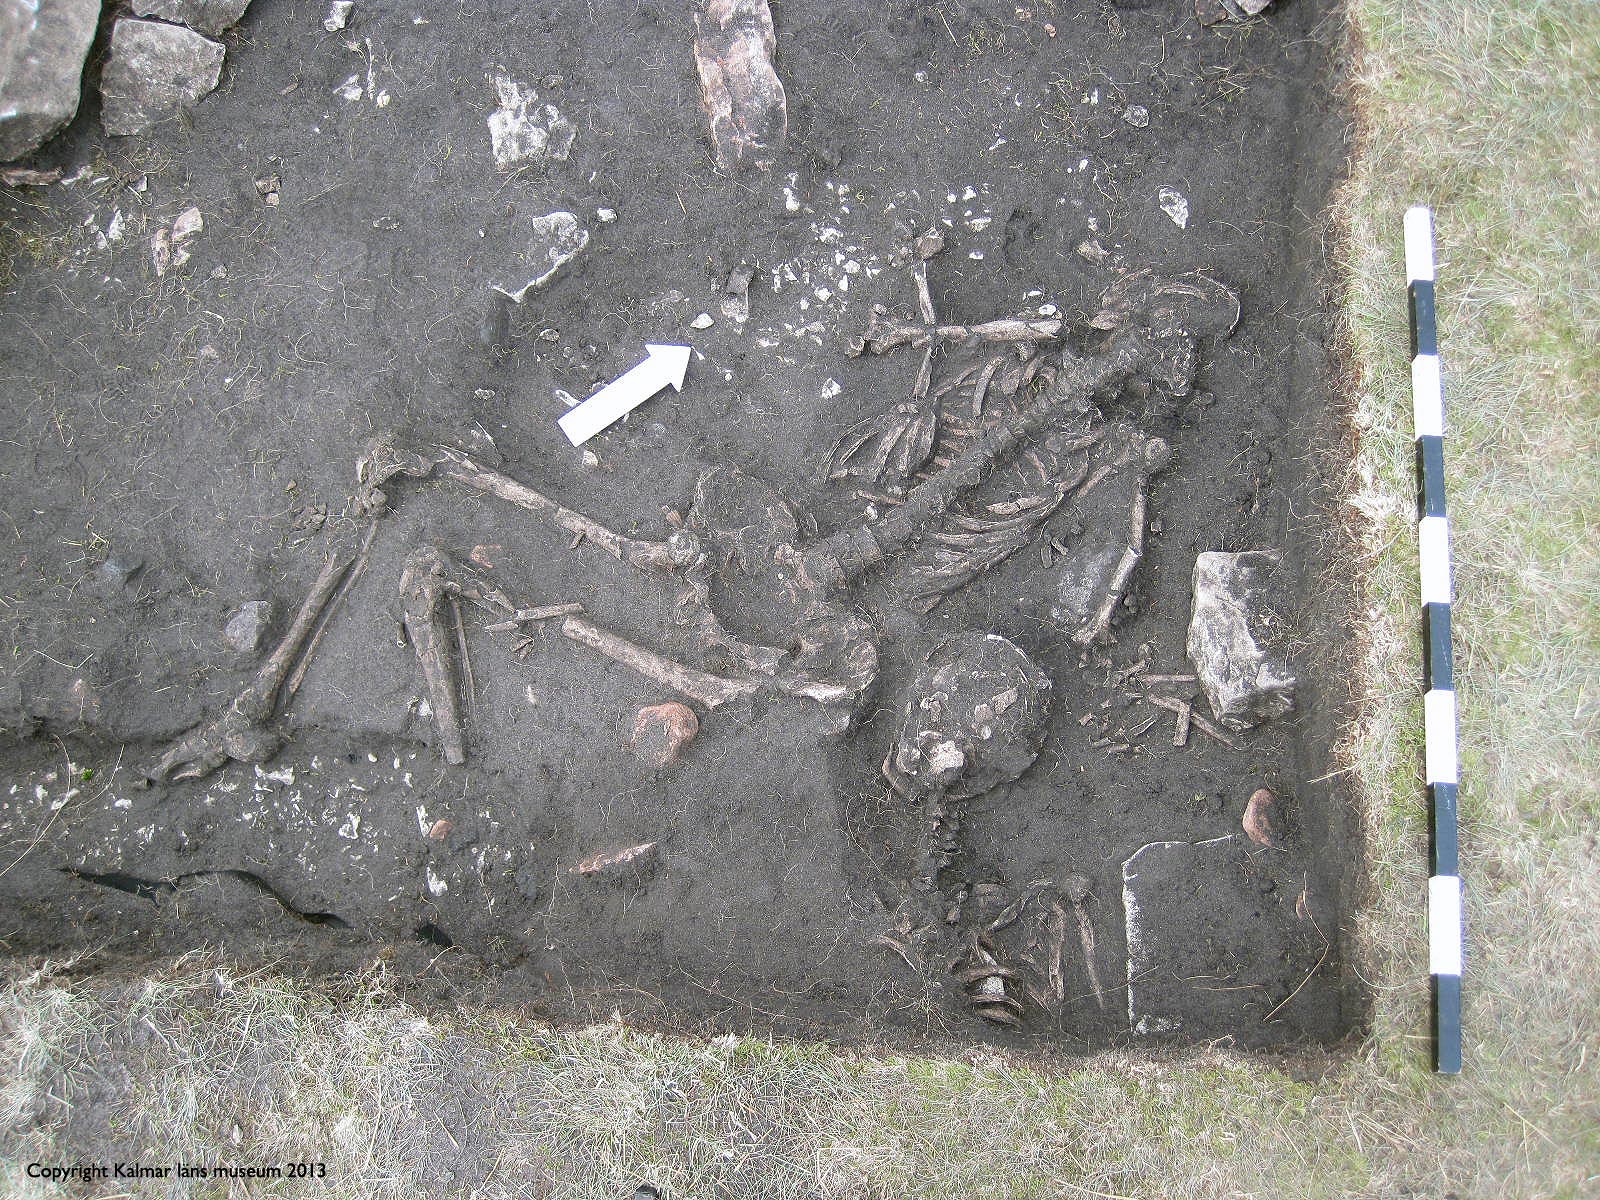 Squelette retrouvé sur le site d'Öland. © Max Jahrehorn, Kalmar läns museum